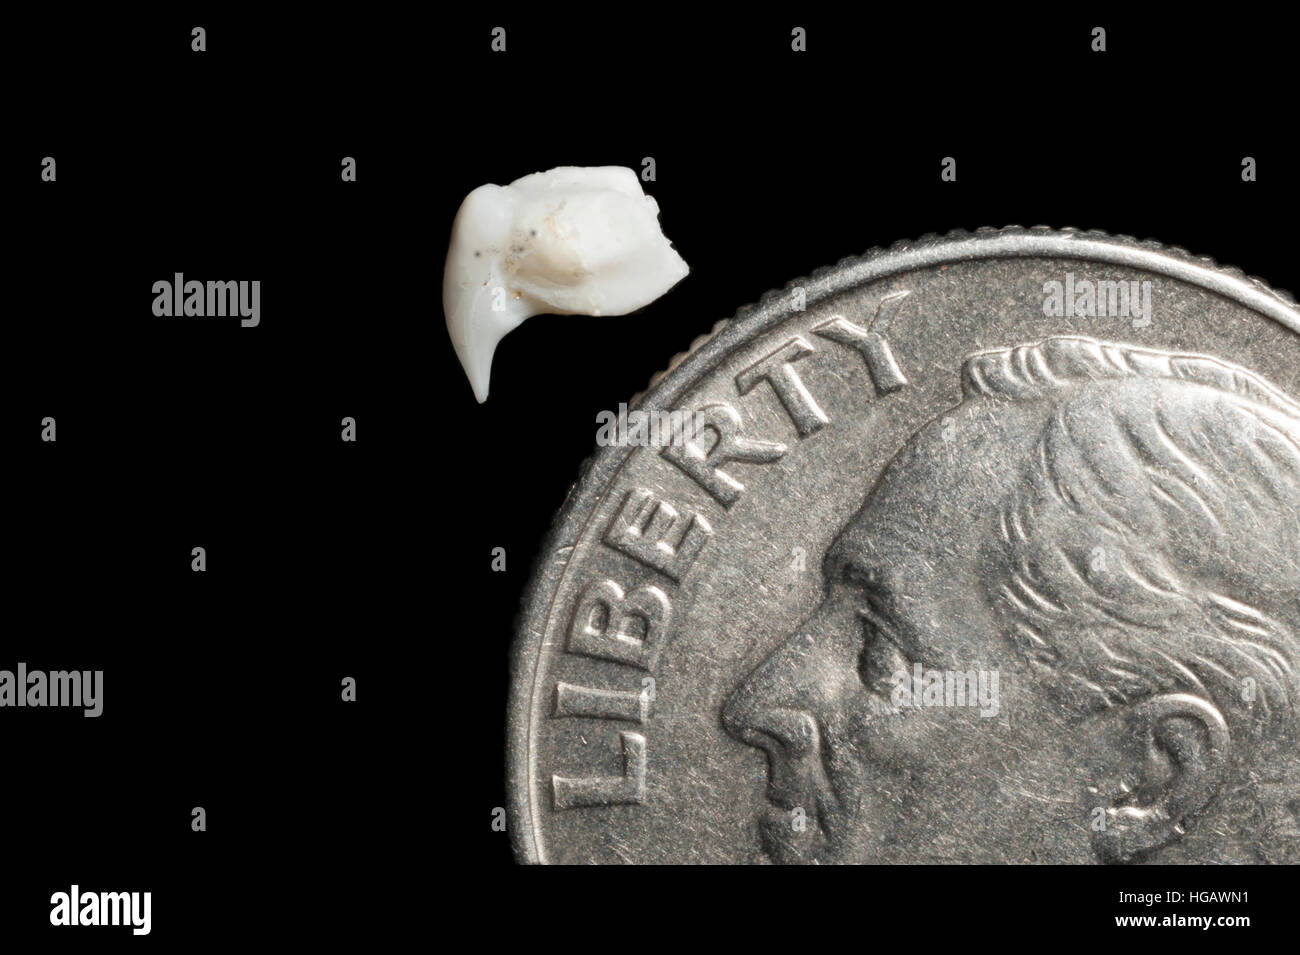 Diente de tiburón ballena, Rhincodon typus, junto a EE.UU. dime (pieza de 10 céntimos) para la comparación de tamaño digitalmente (modificado) Foto de stock